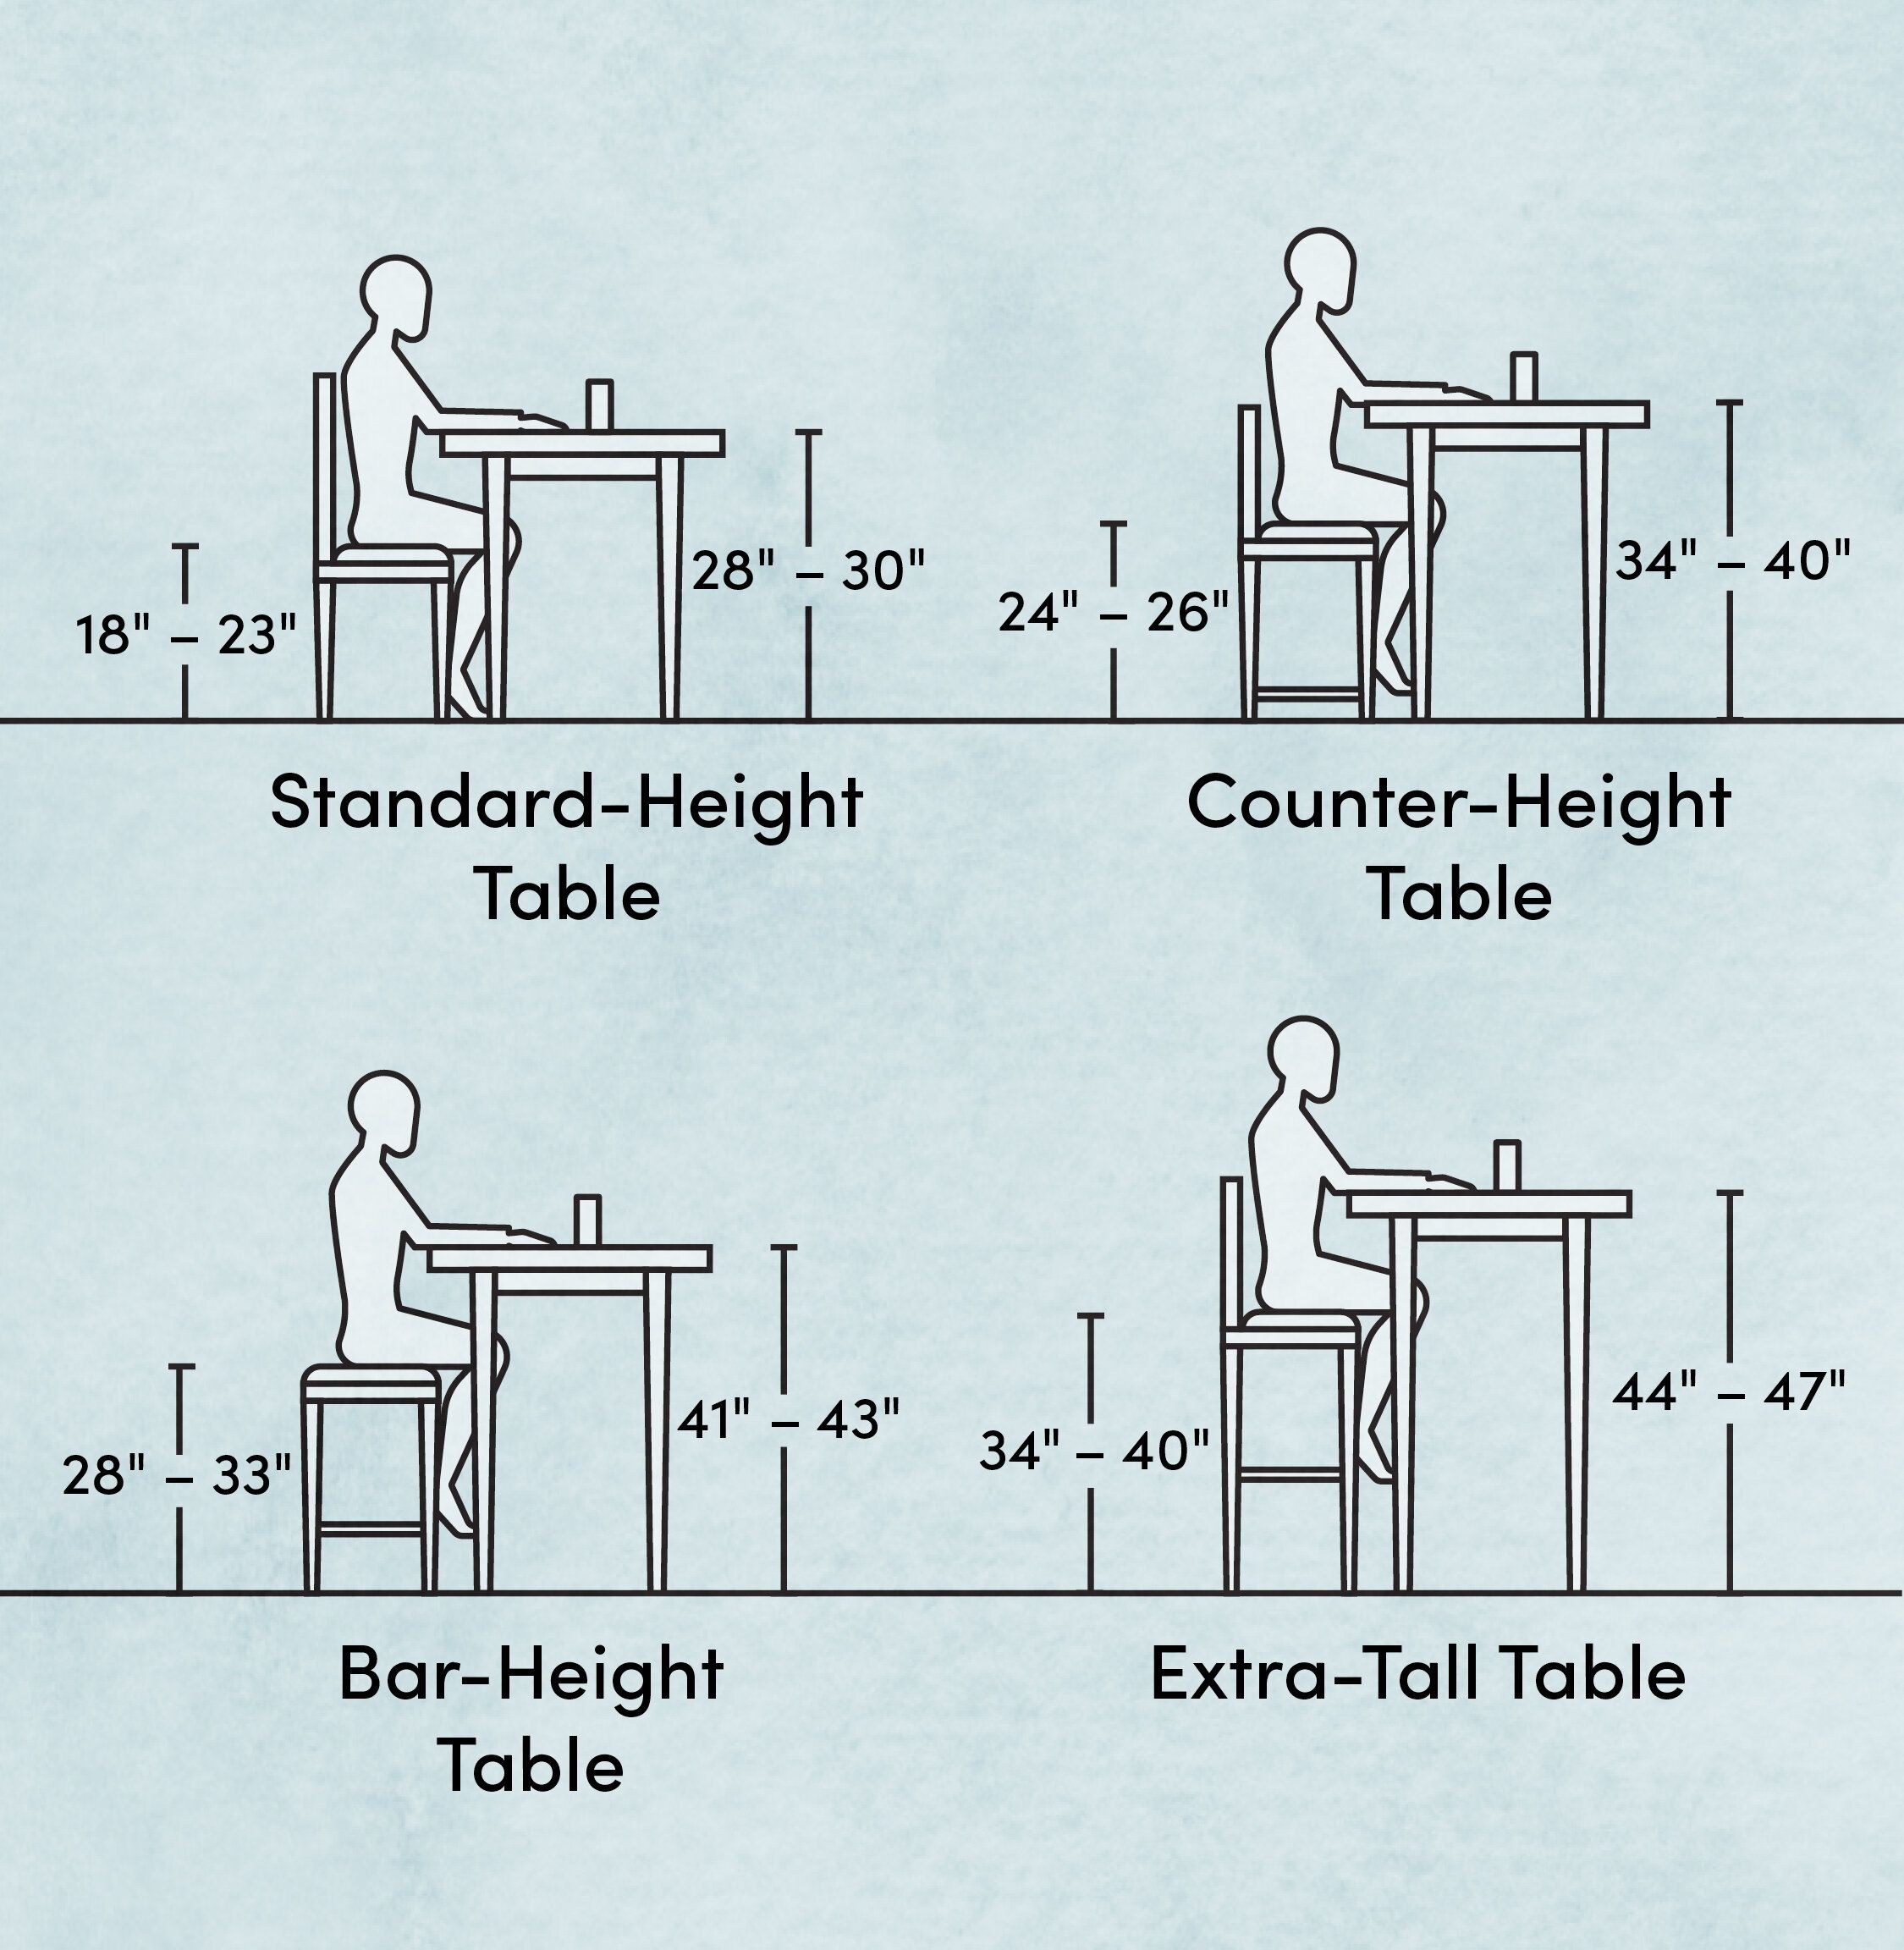 нормы высоты стула и стола для детей